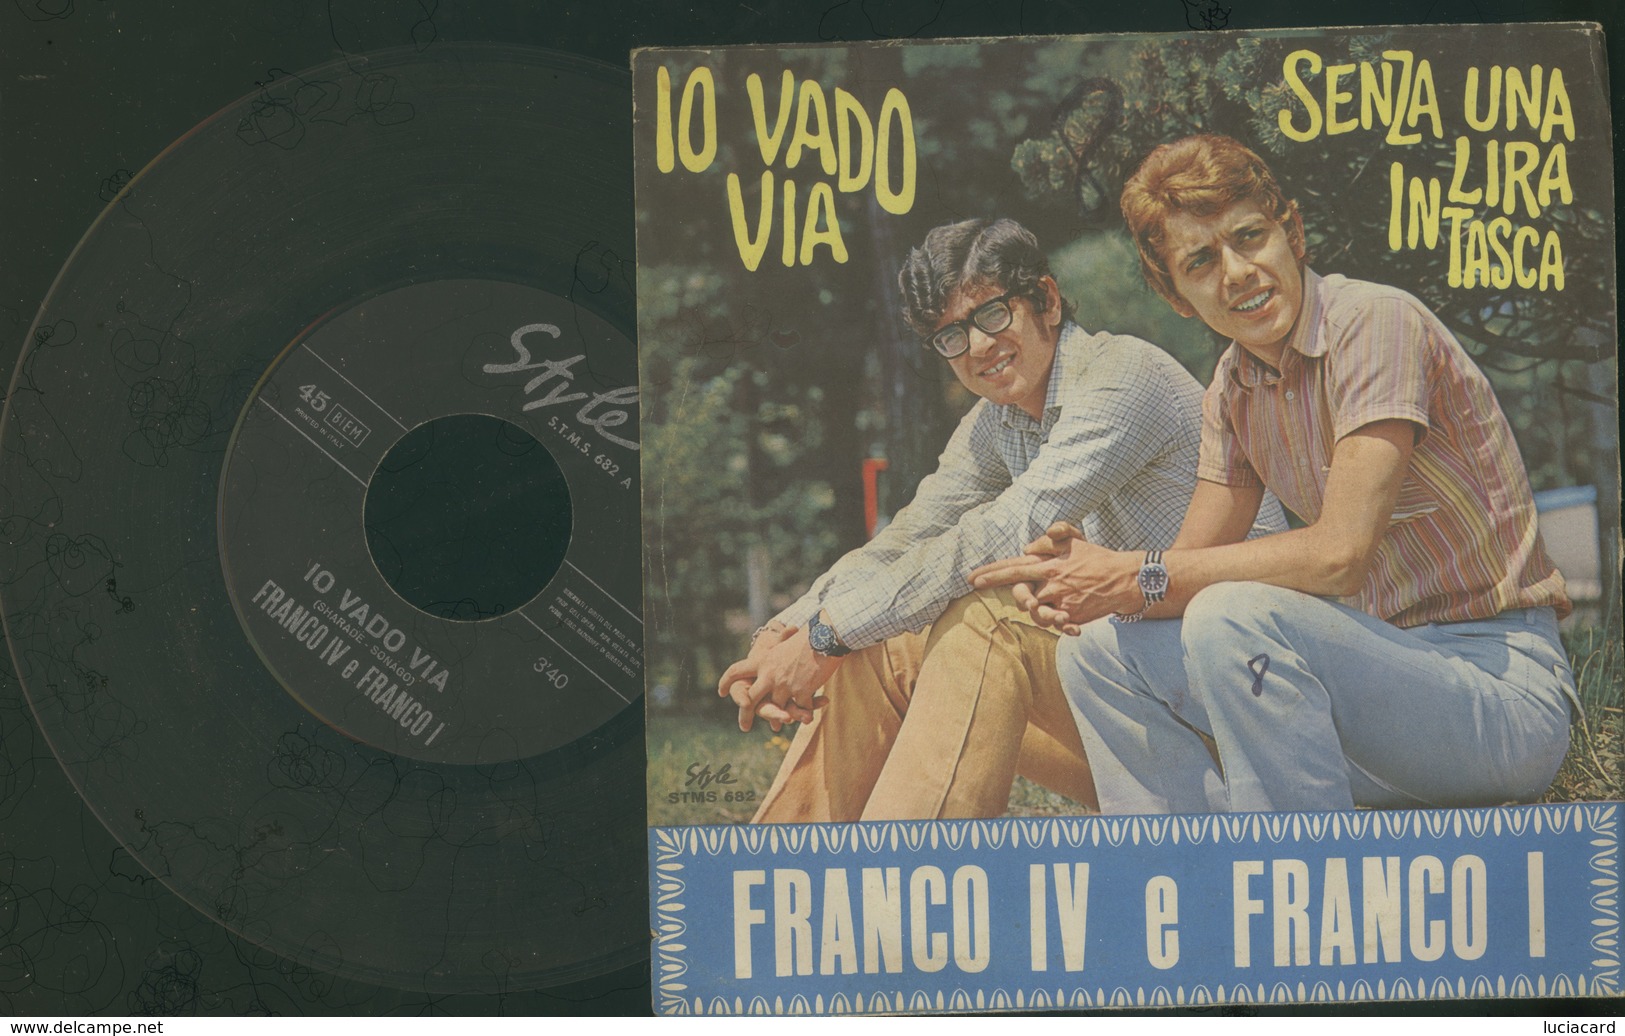 FRANCO IV E FRANCO I -SENZA UNA LIRA IN TASCA -IO VADO VIA -DISCO VINILE - Altri - Musica Italiana